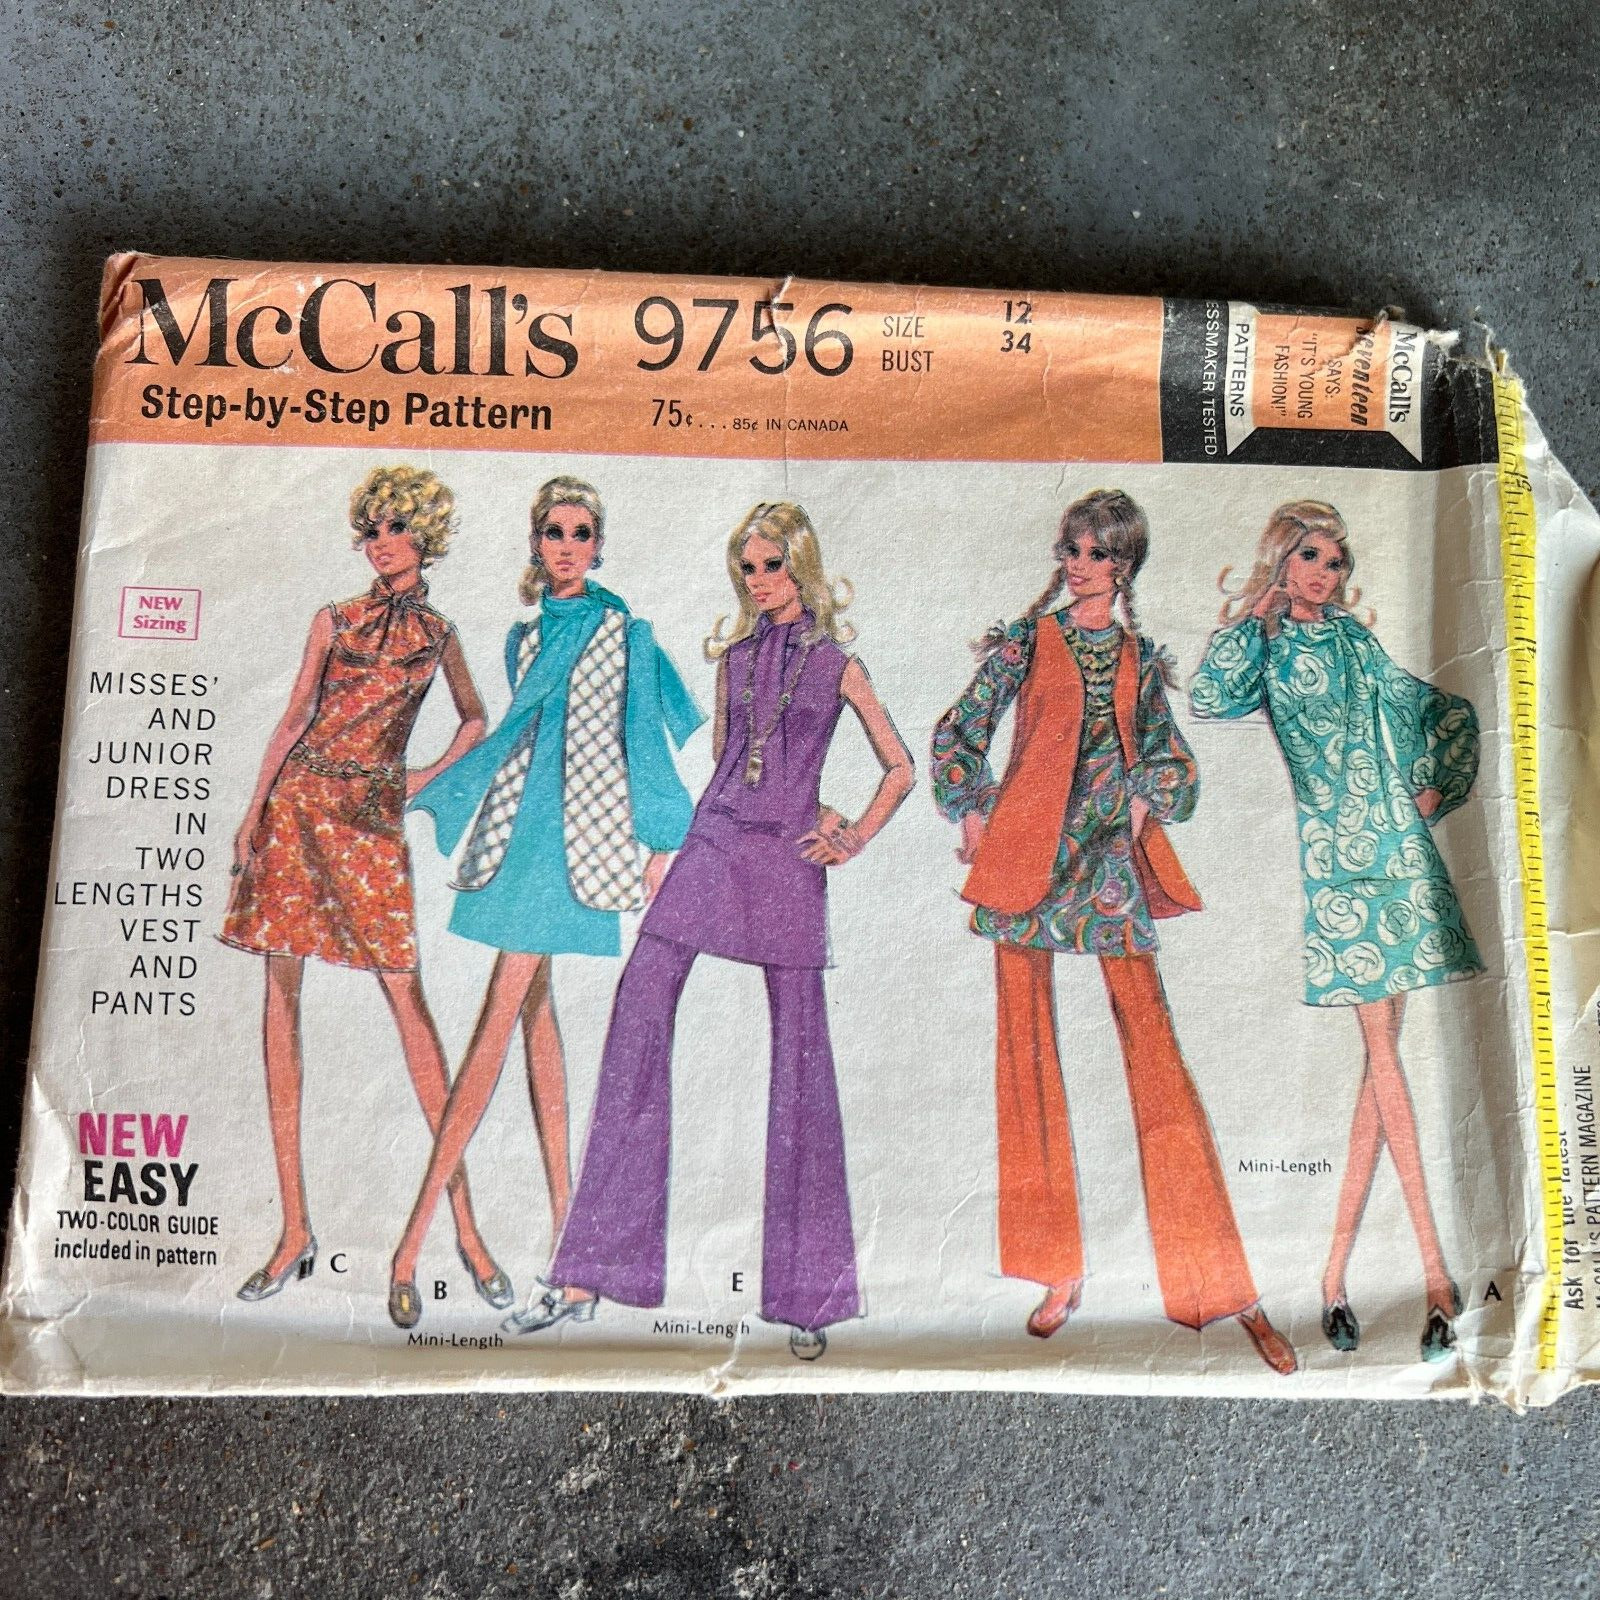 Vintage 60s McCalls Pattern 9756 SZ 12 Misses Coordinates Hippie